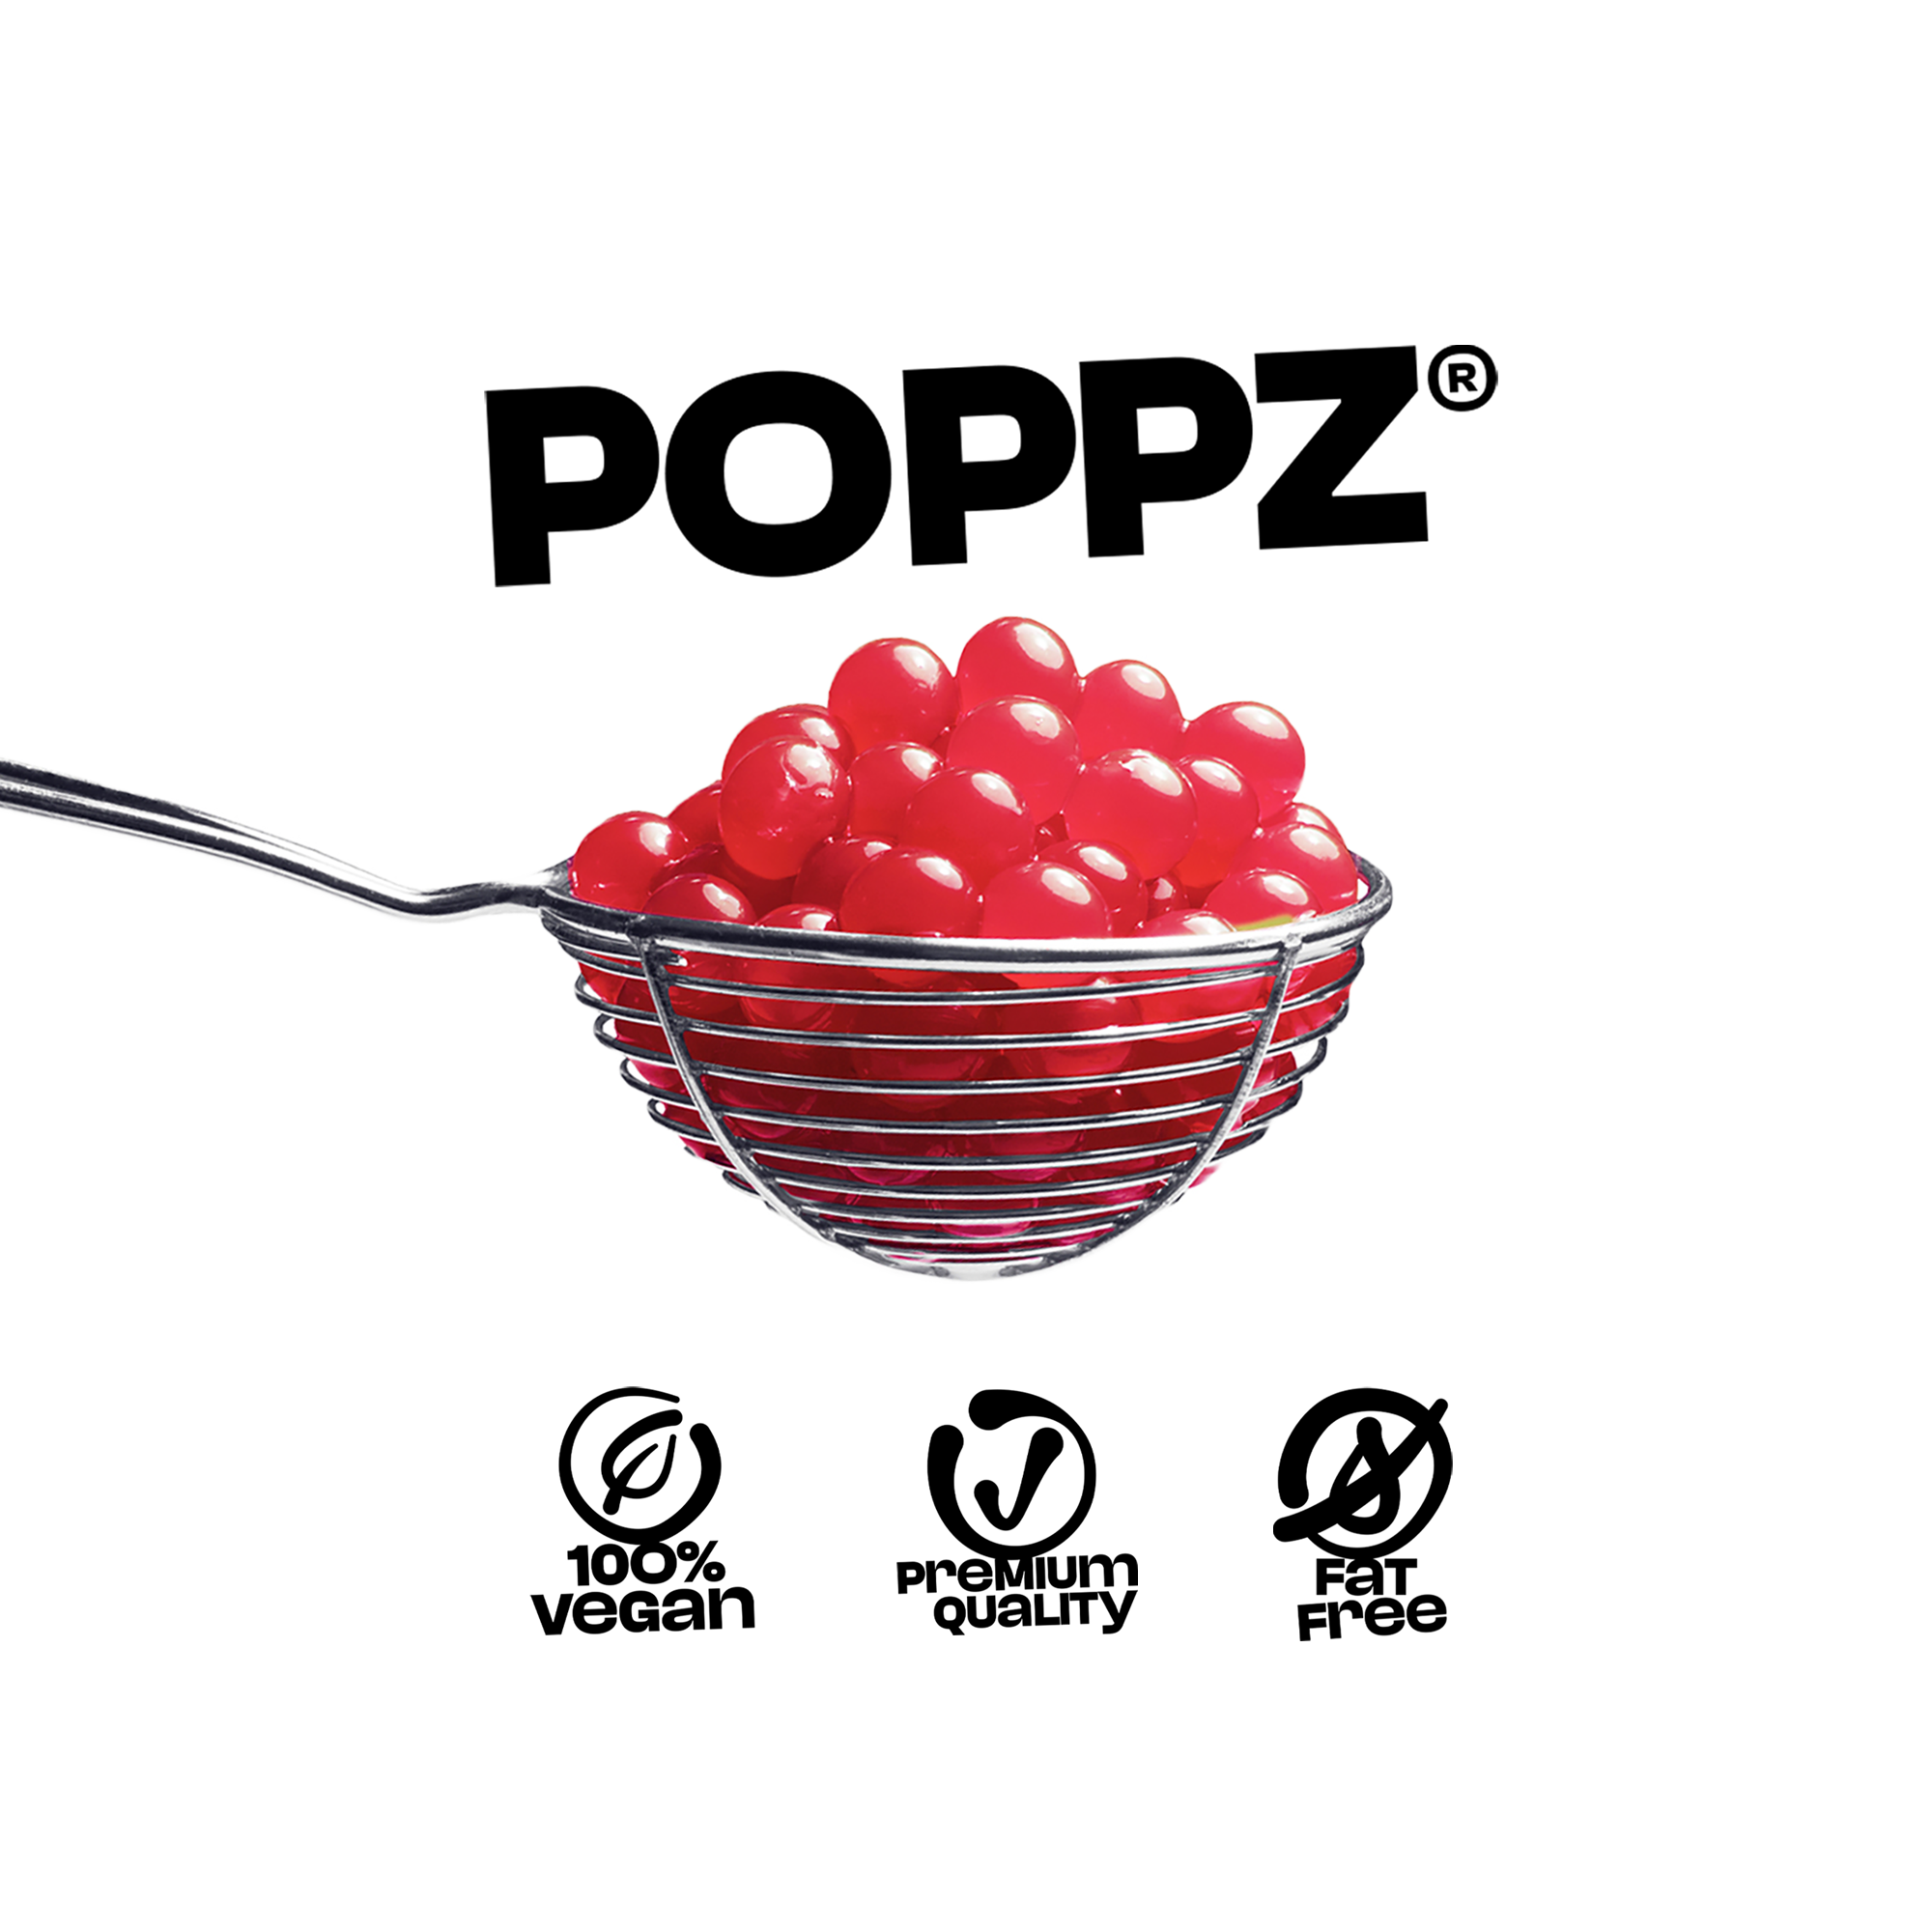 POPPZ Mix Erdbeere, Pfirsich | 2 x 450 G